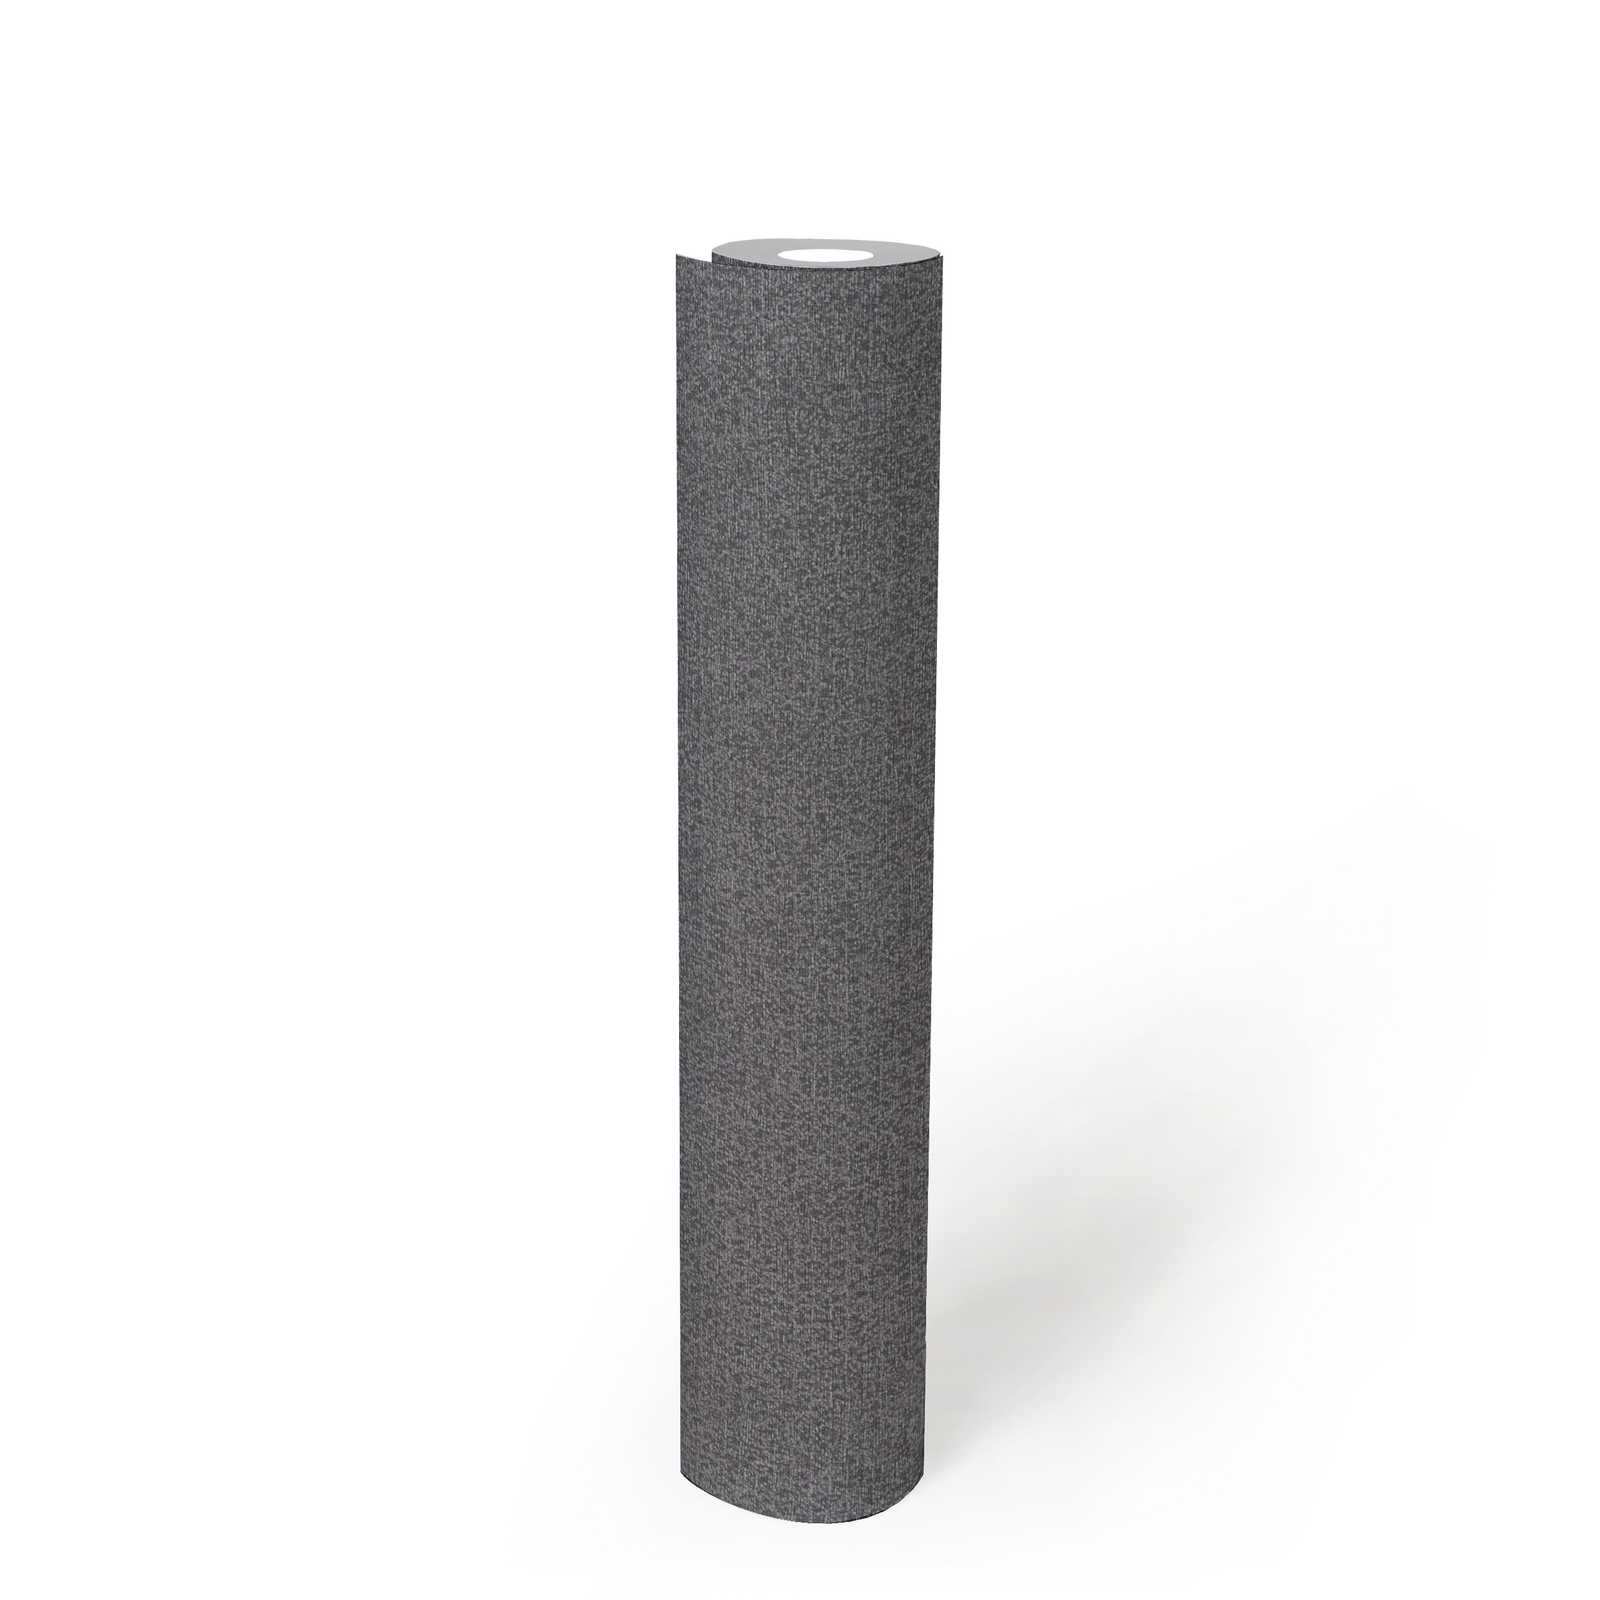             PVC-vrij vliesbehang met glansmotief - zwart, zilver
        